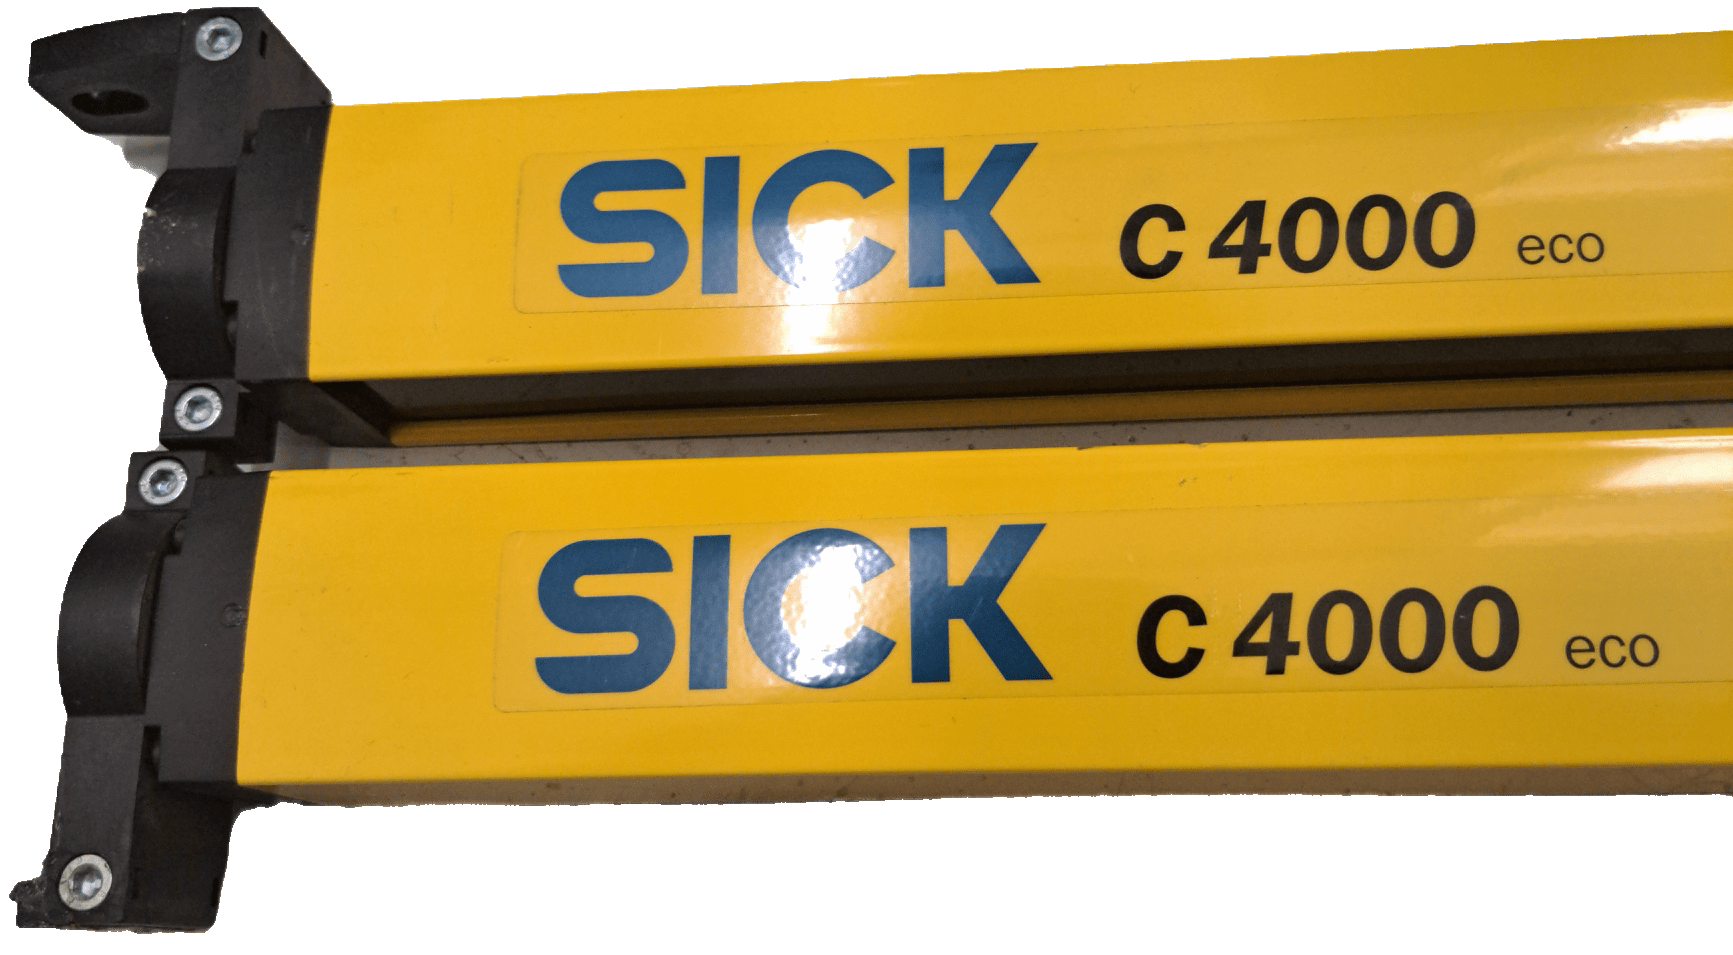 Sick Sicherheitslichtvorhang-set C4000 1027474 / 1027475 - #product_category# | Klenk Maschinenhandel